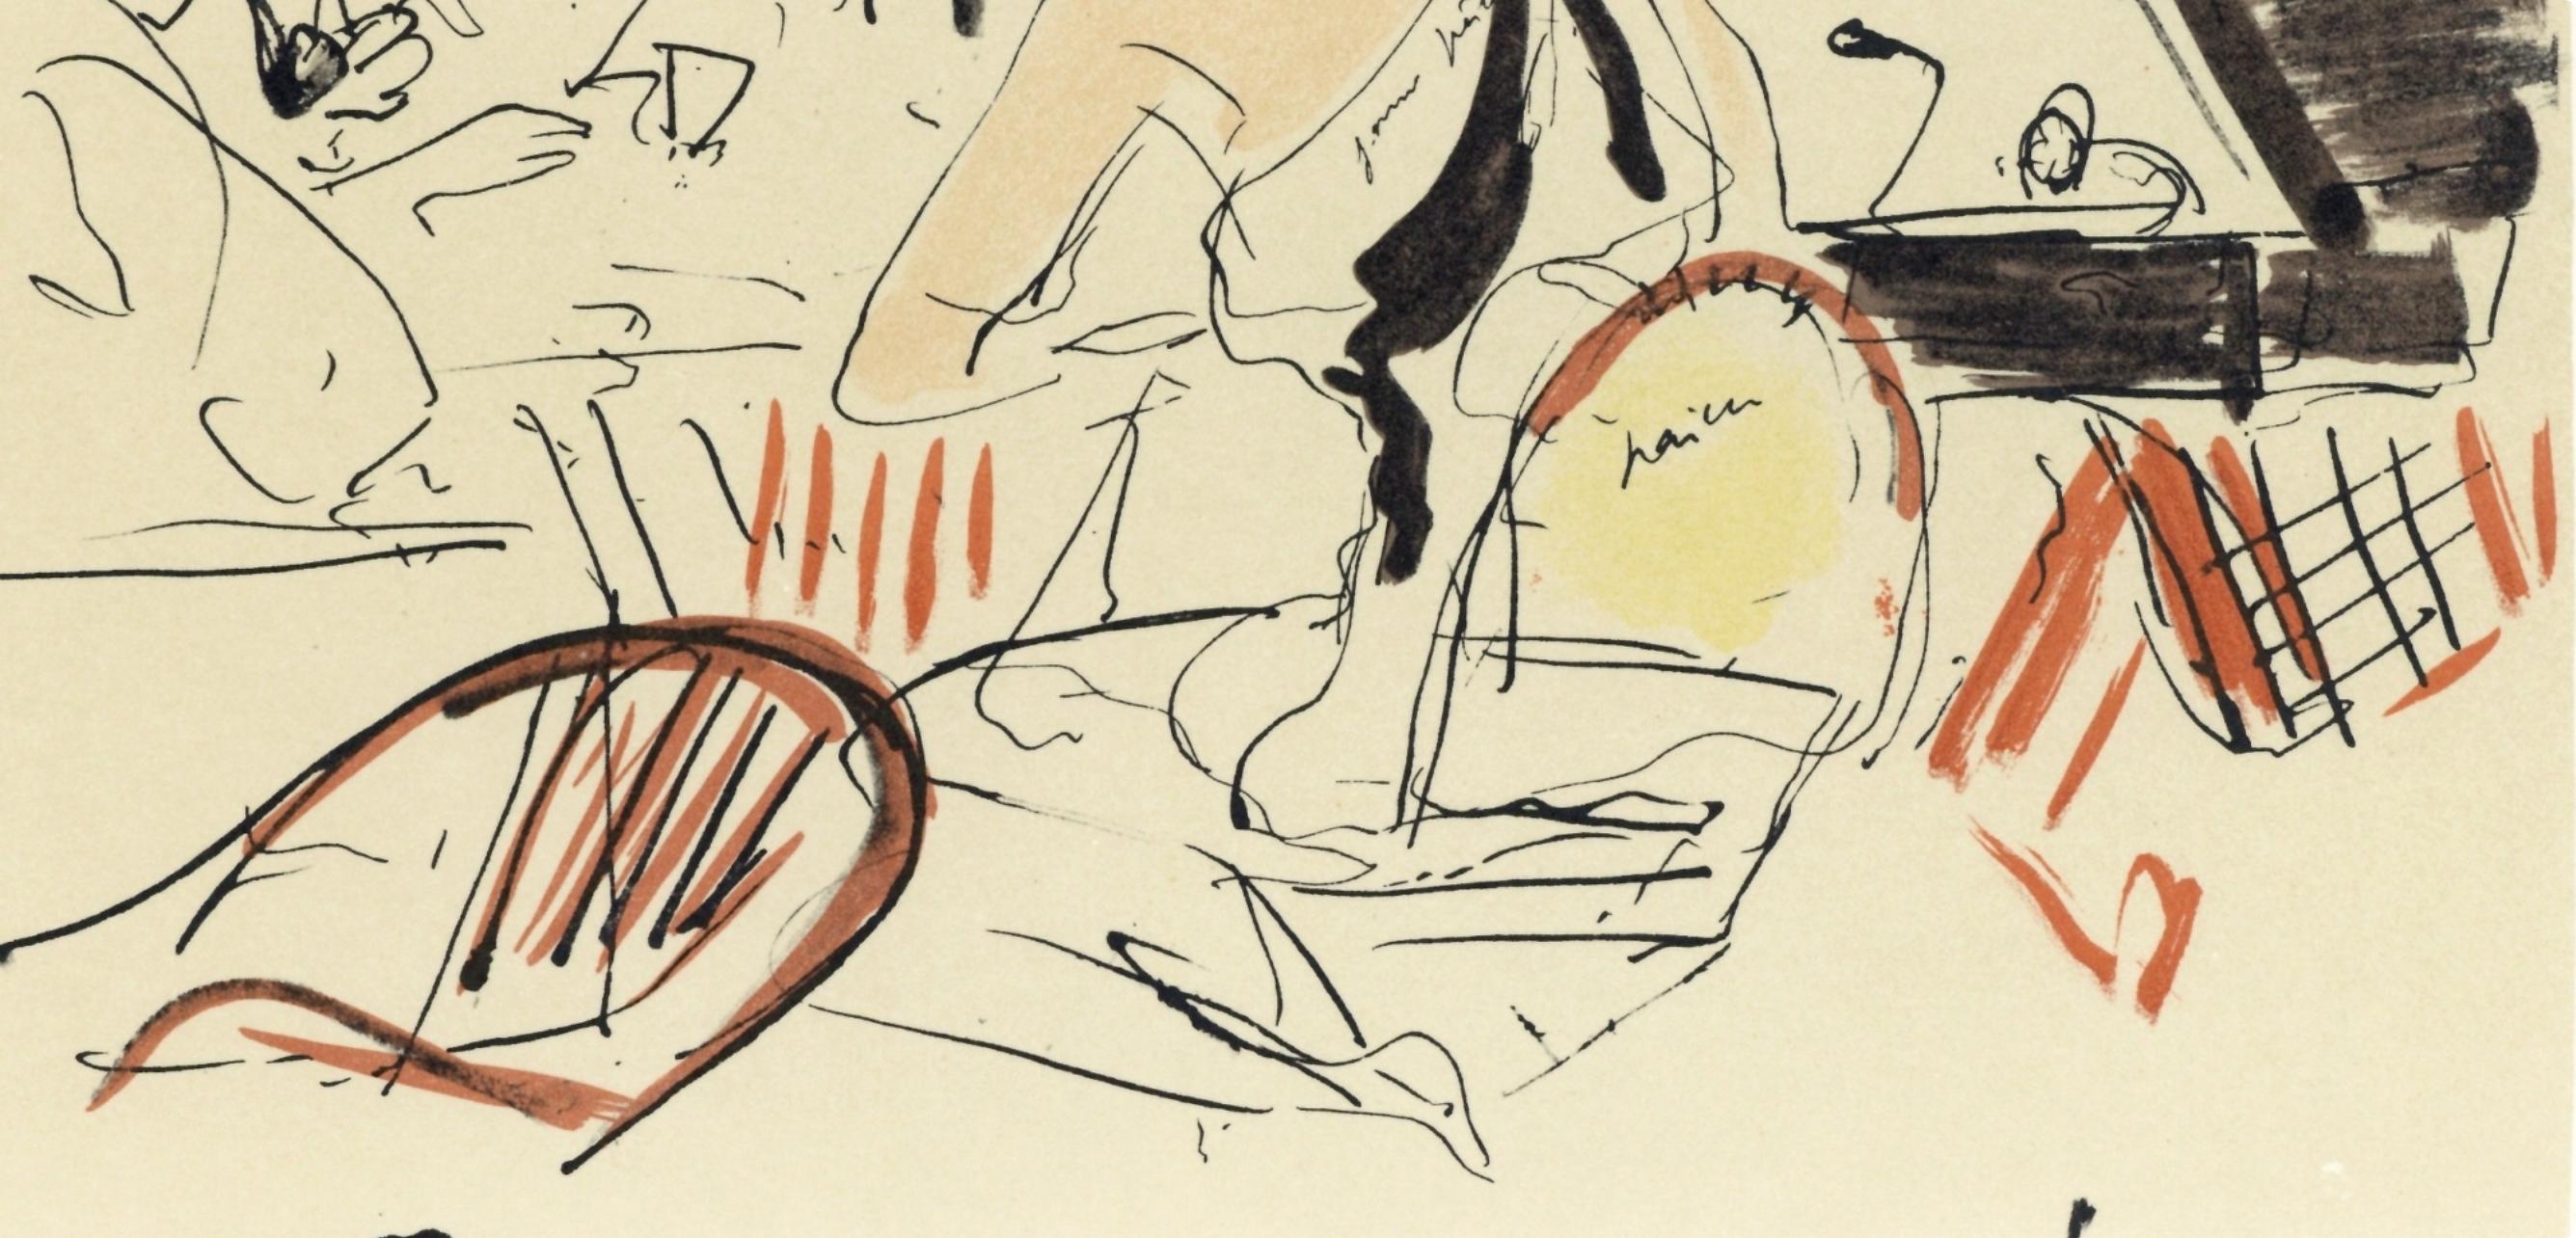 de Segonzac, Eden Roc, Lettre à mon peintre Raoul Dufy (after) - Modern Print by André Dunoyer de Segonzac